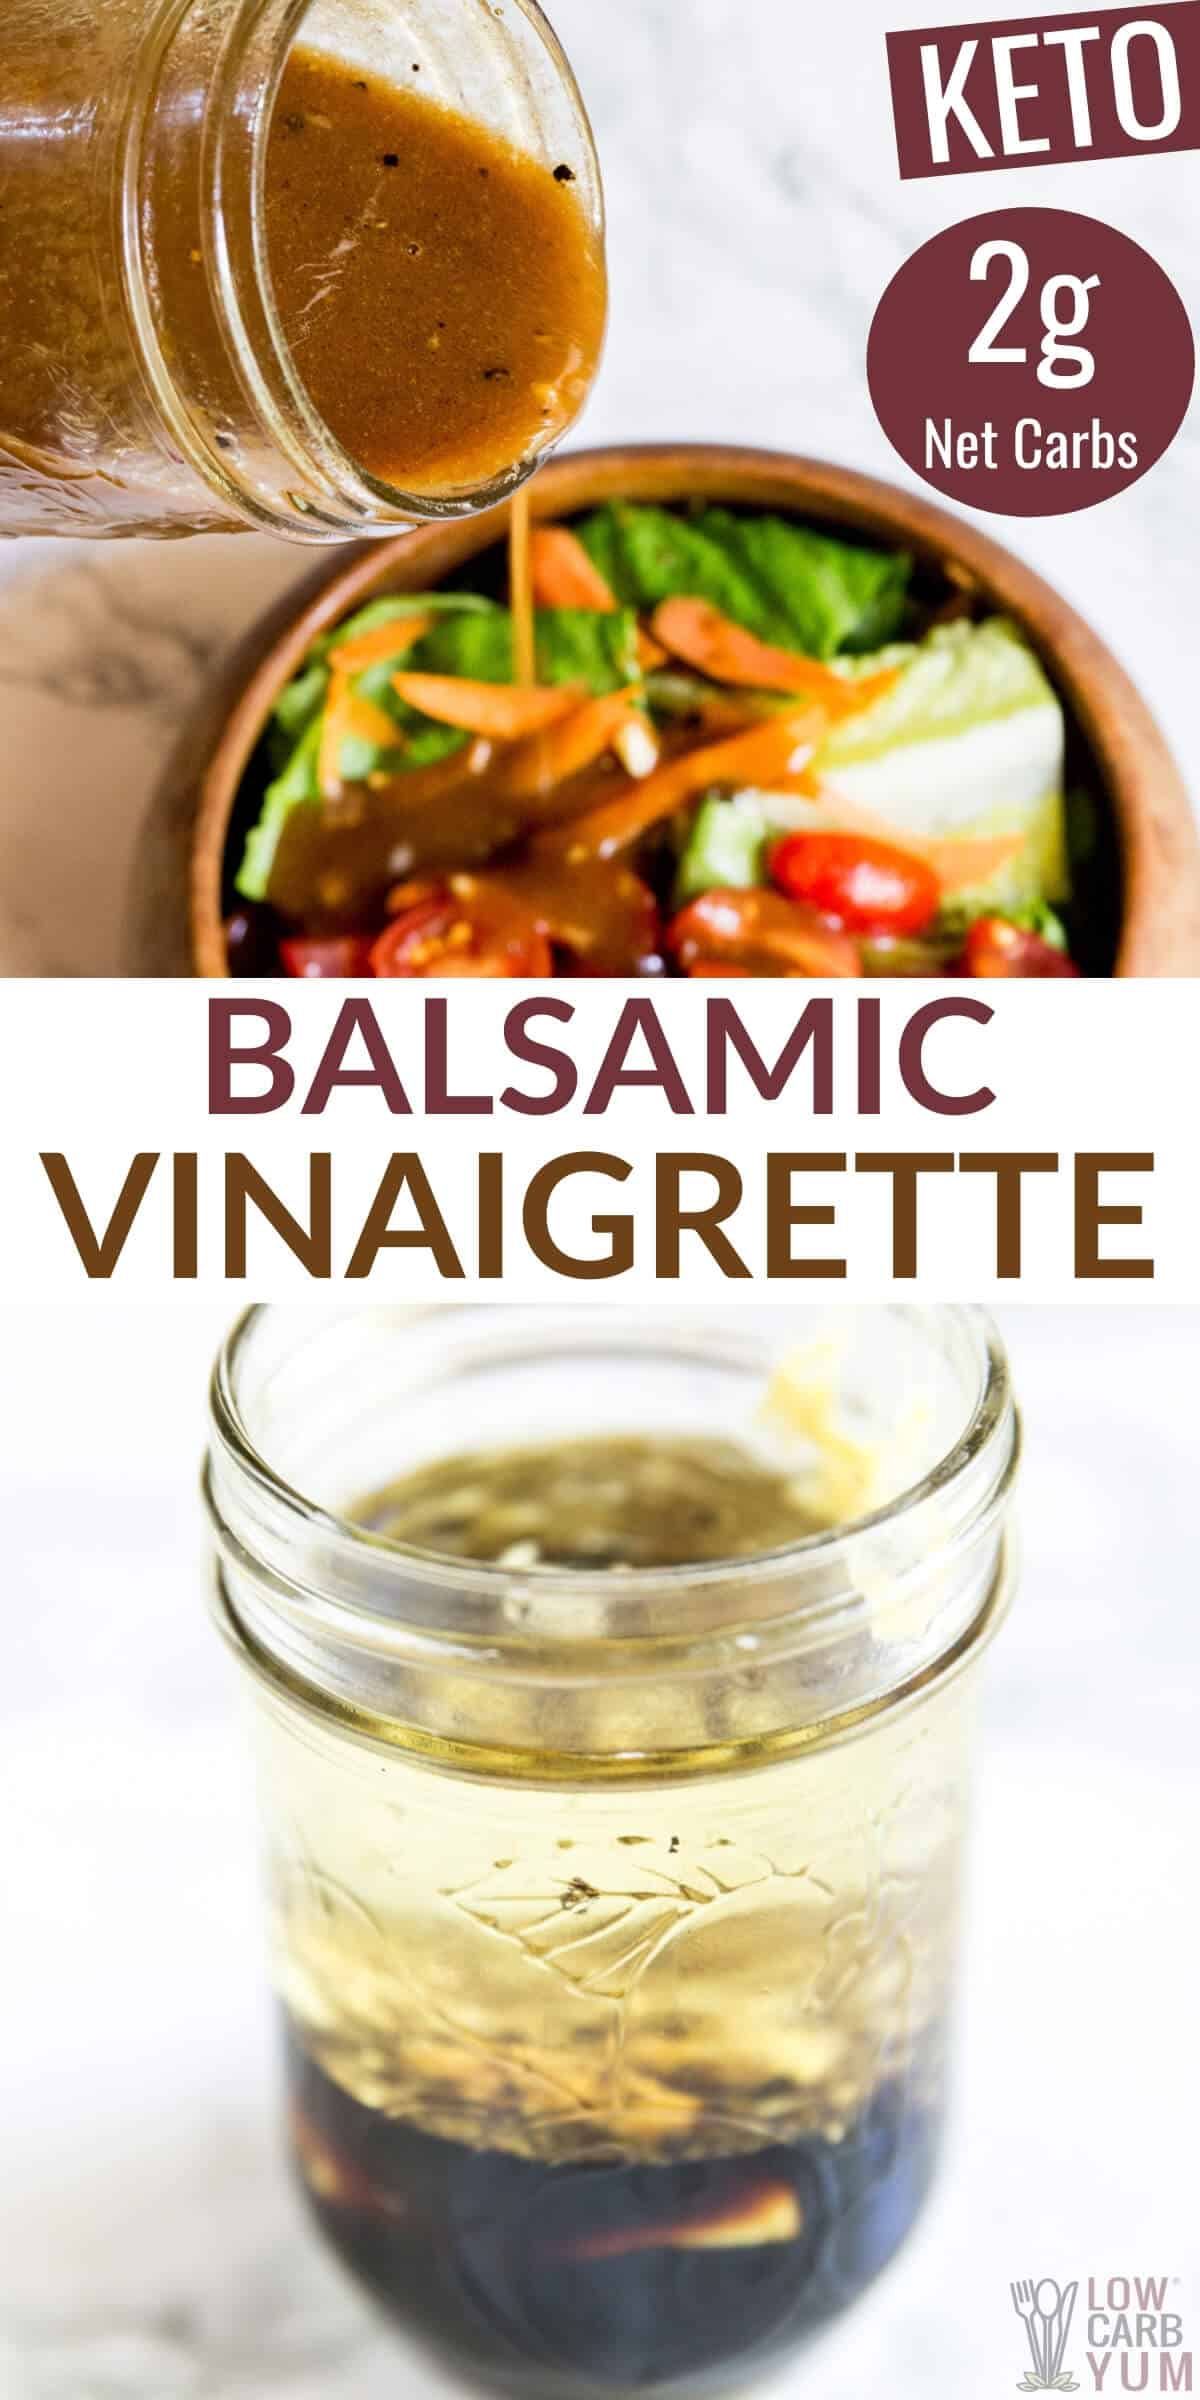 balsamic vinaigrette salad dressing pinterest image